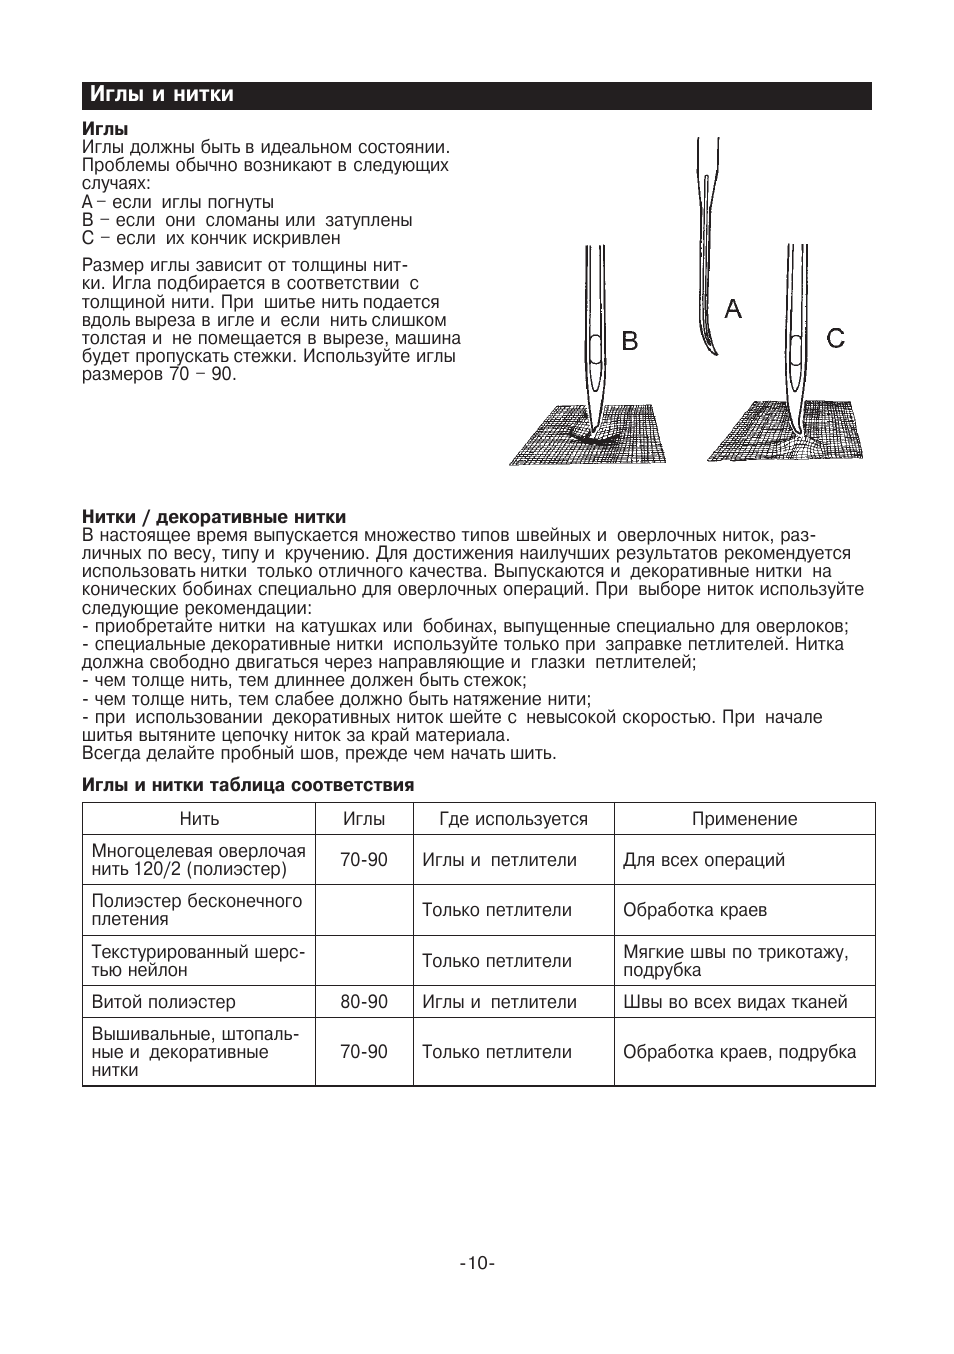 Иглы и нитки | Инструкция по эксплуатации Juki MO-735 | Страница 11 / 46